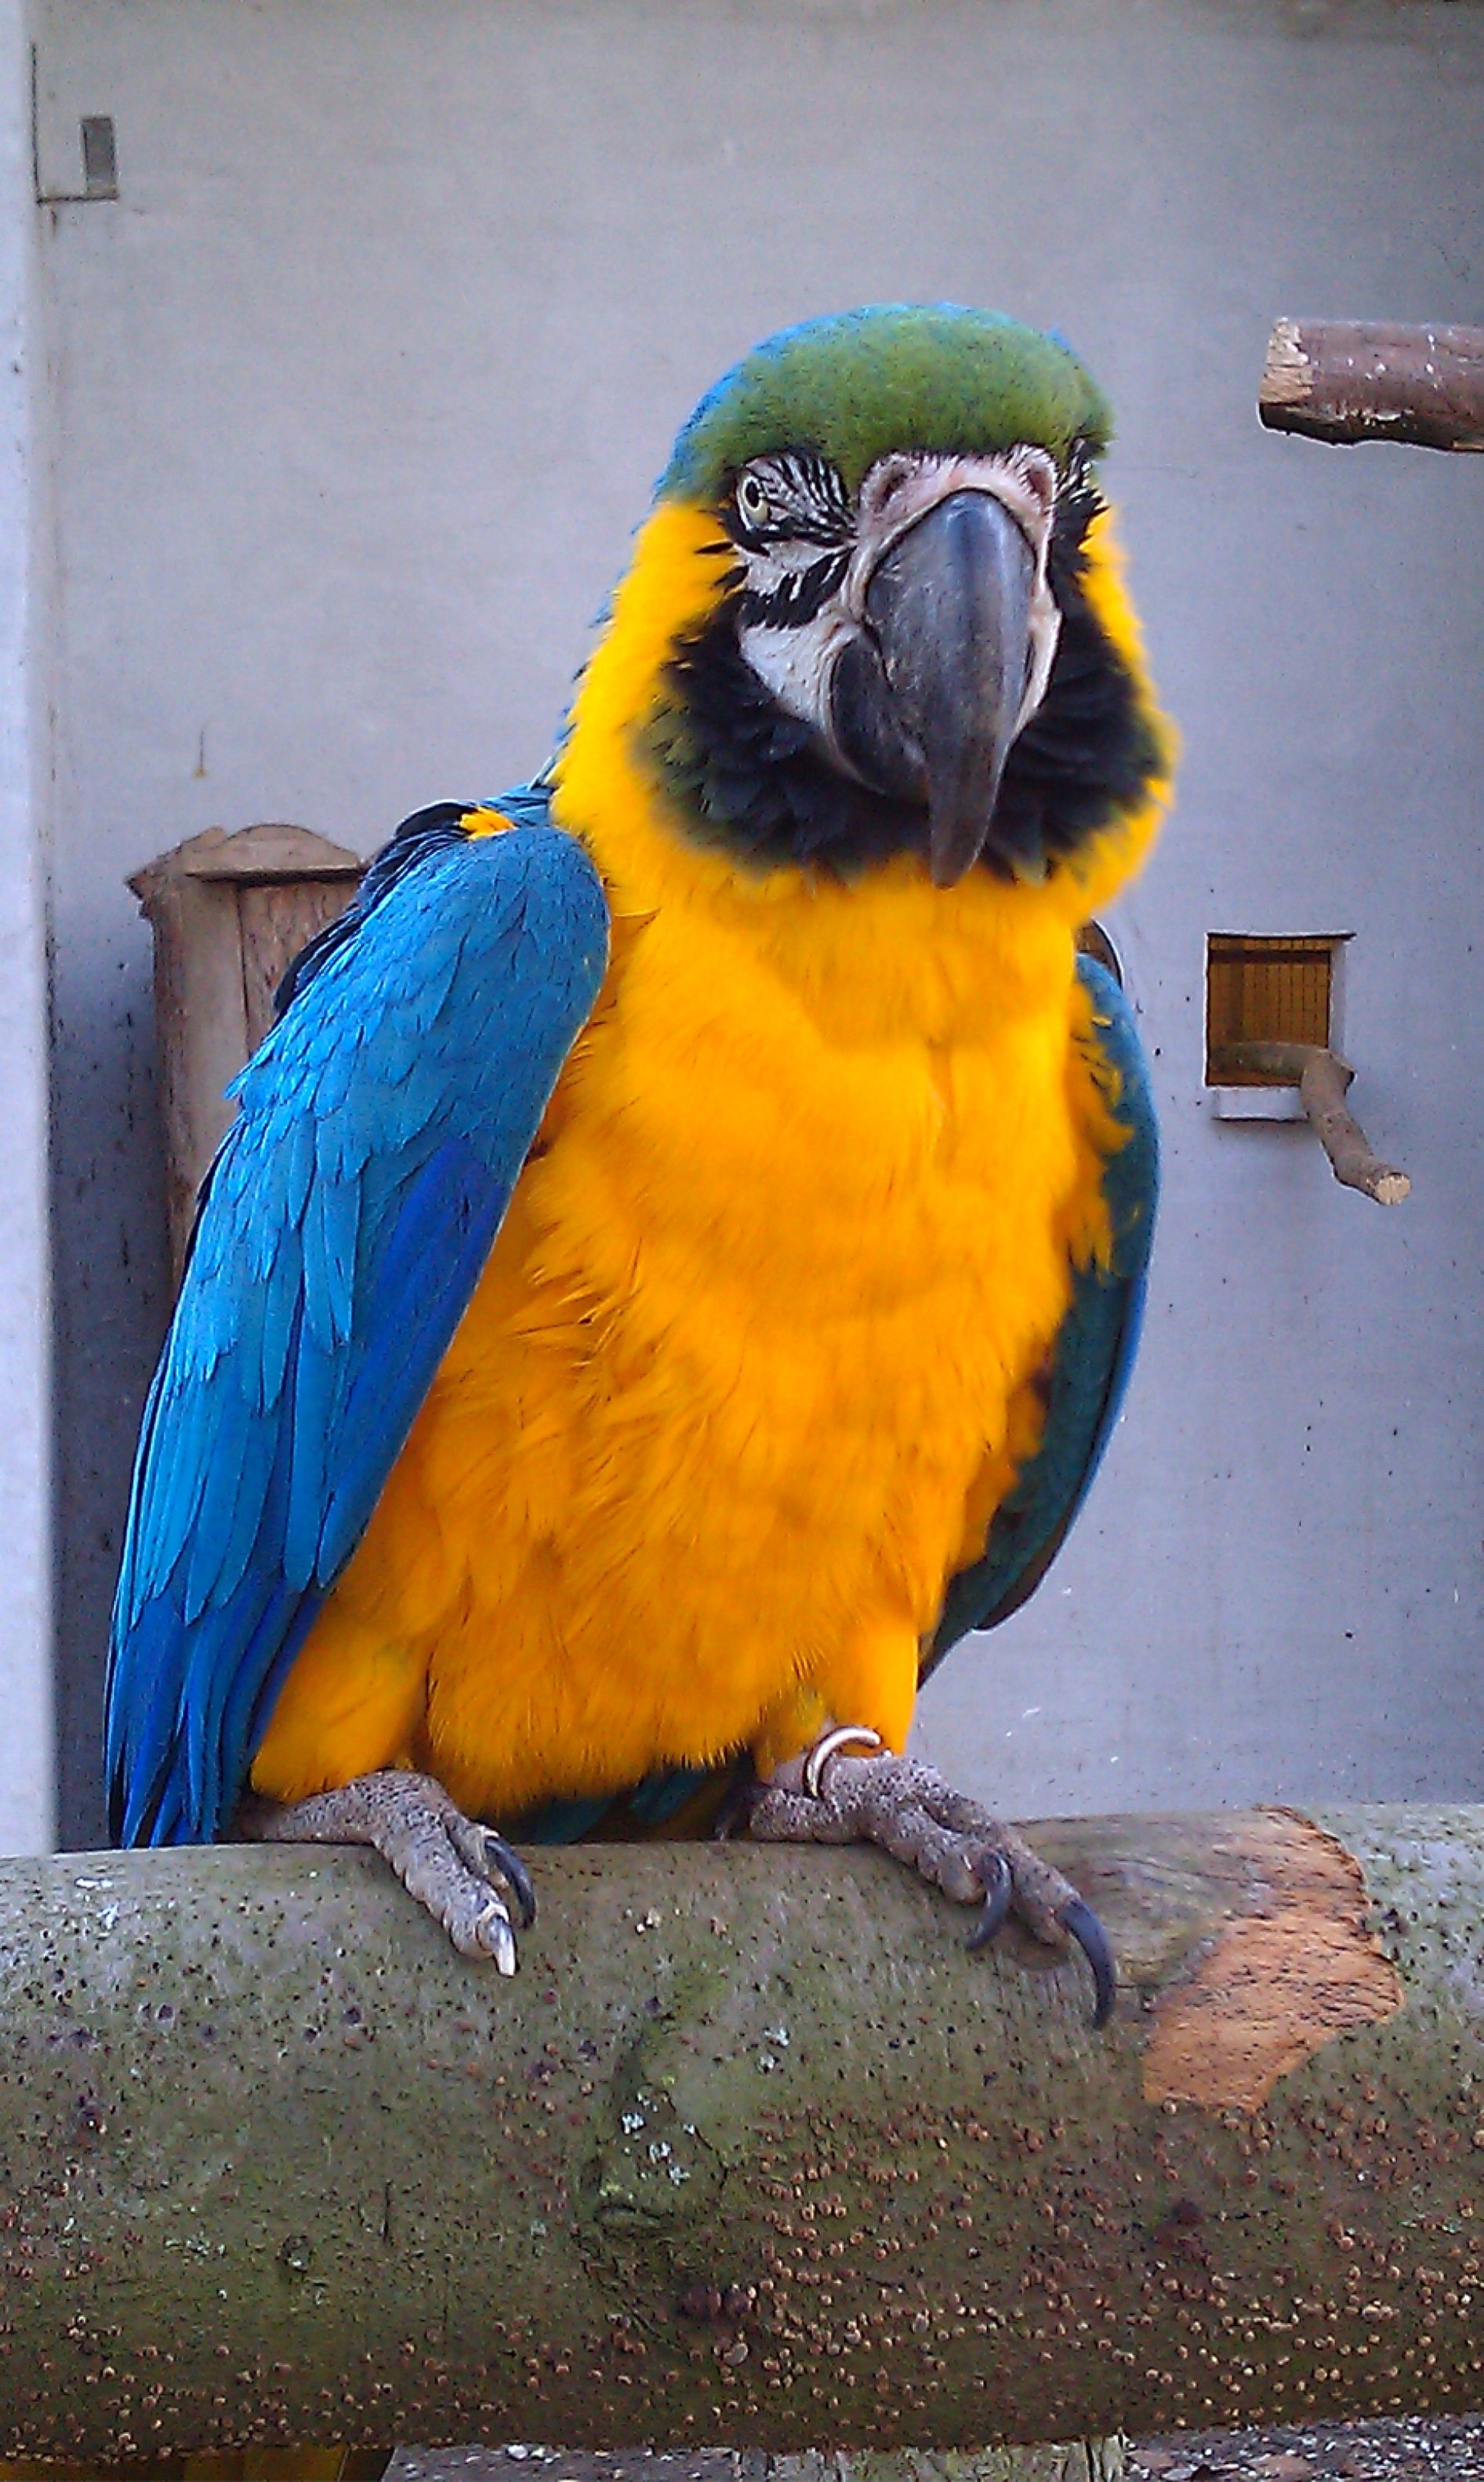 papegøjer stjålet fra fynsk fuglezoo: - Det er helt | TV2 Fyn